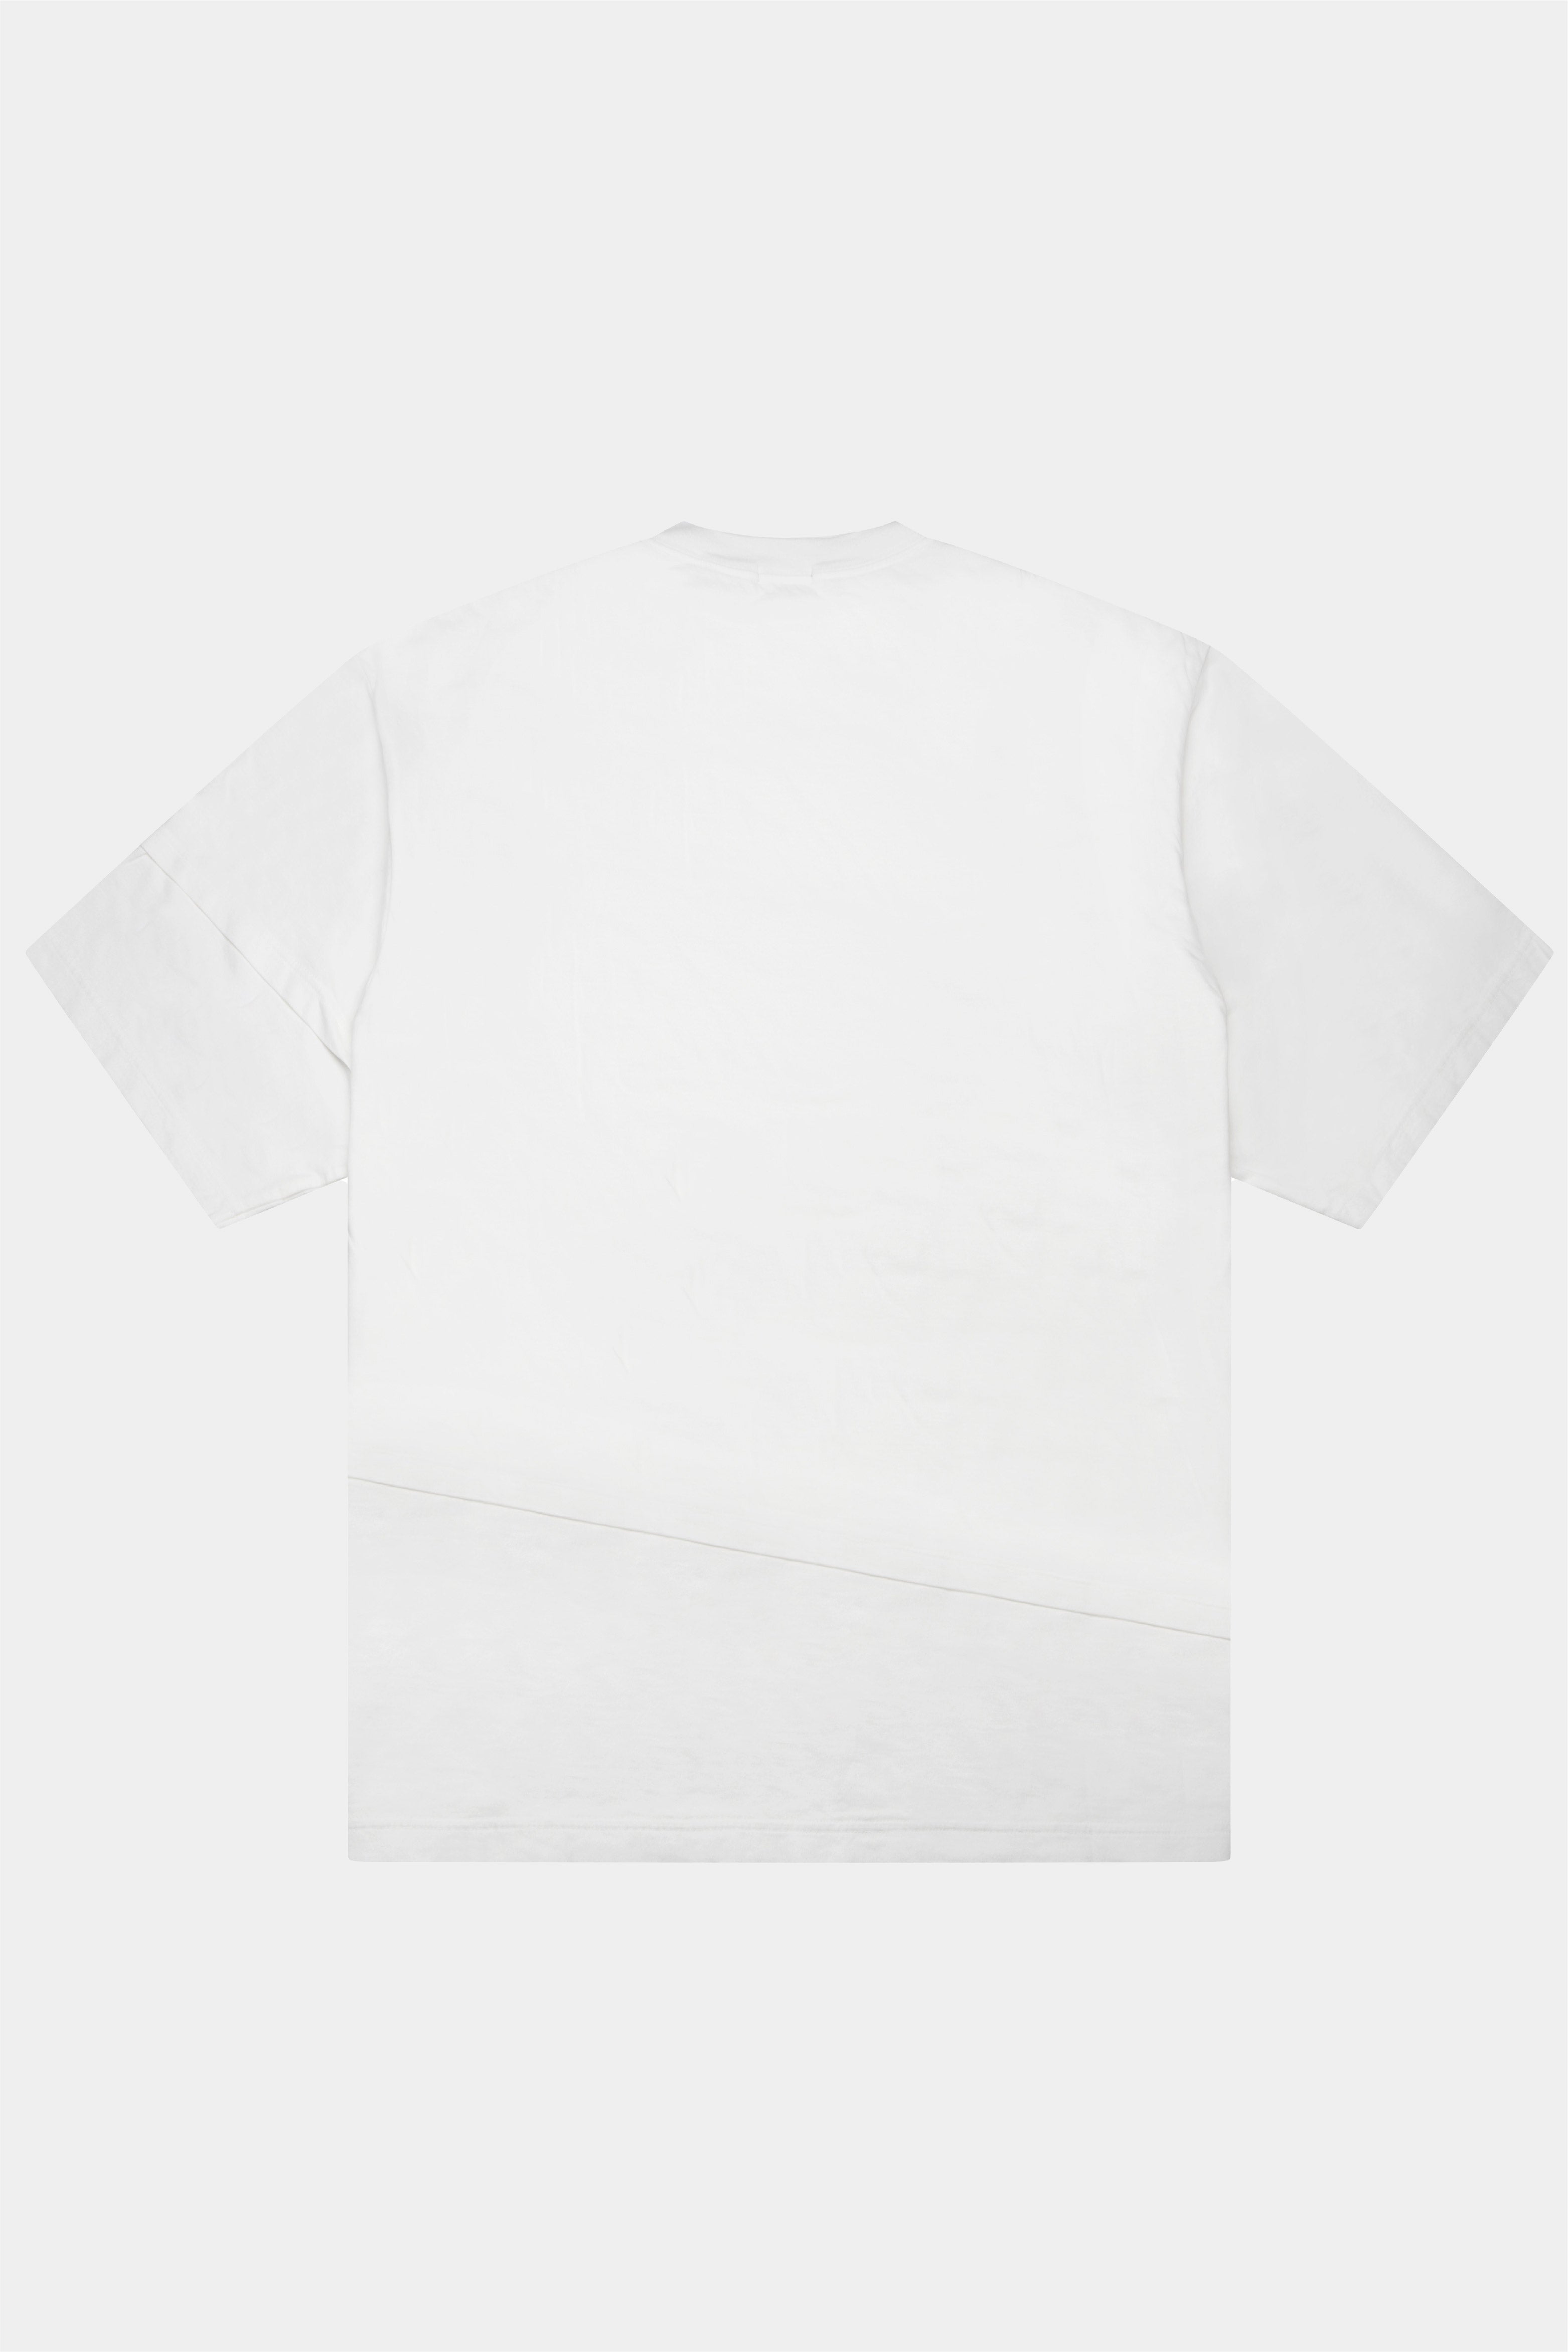 Selectshop FRAME - UNDERCOVERISM T-Shirt T-Shirts Concept Store Dubai